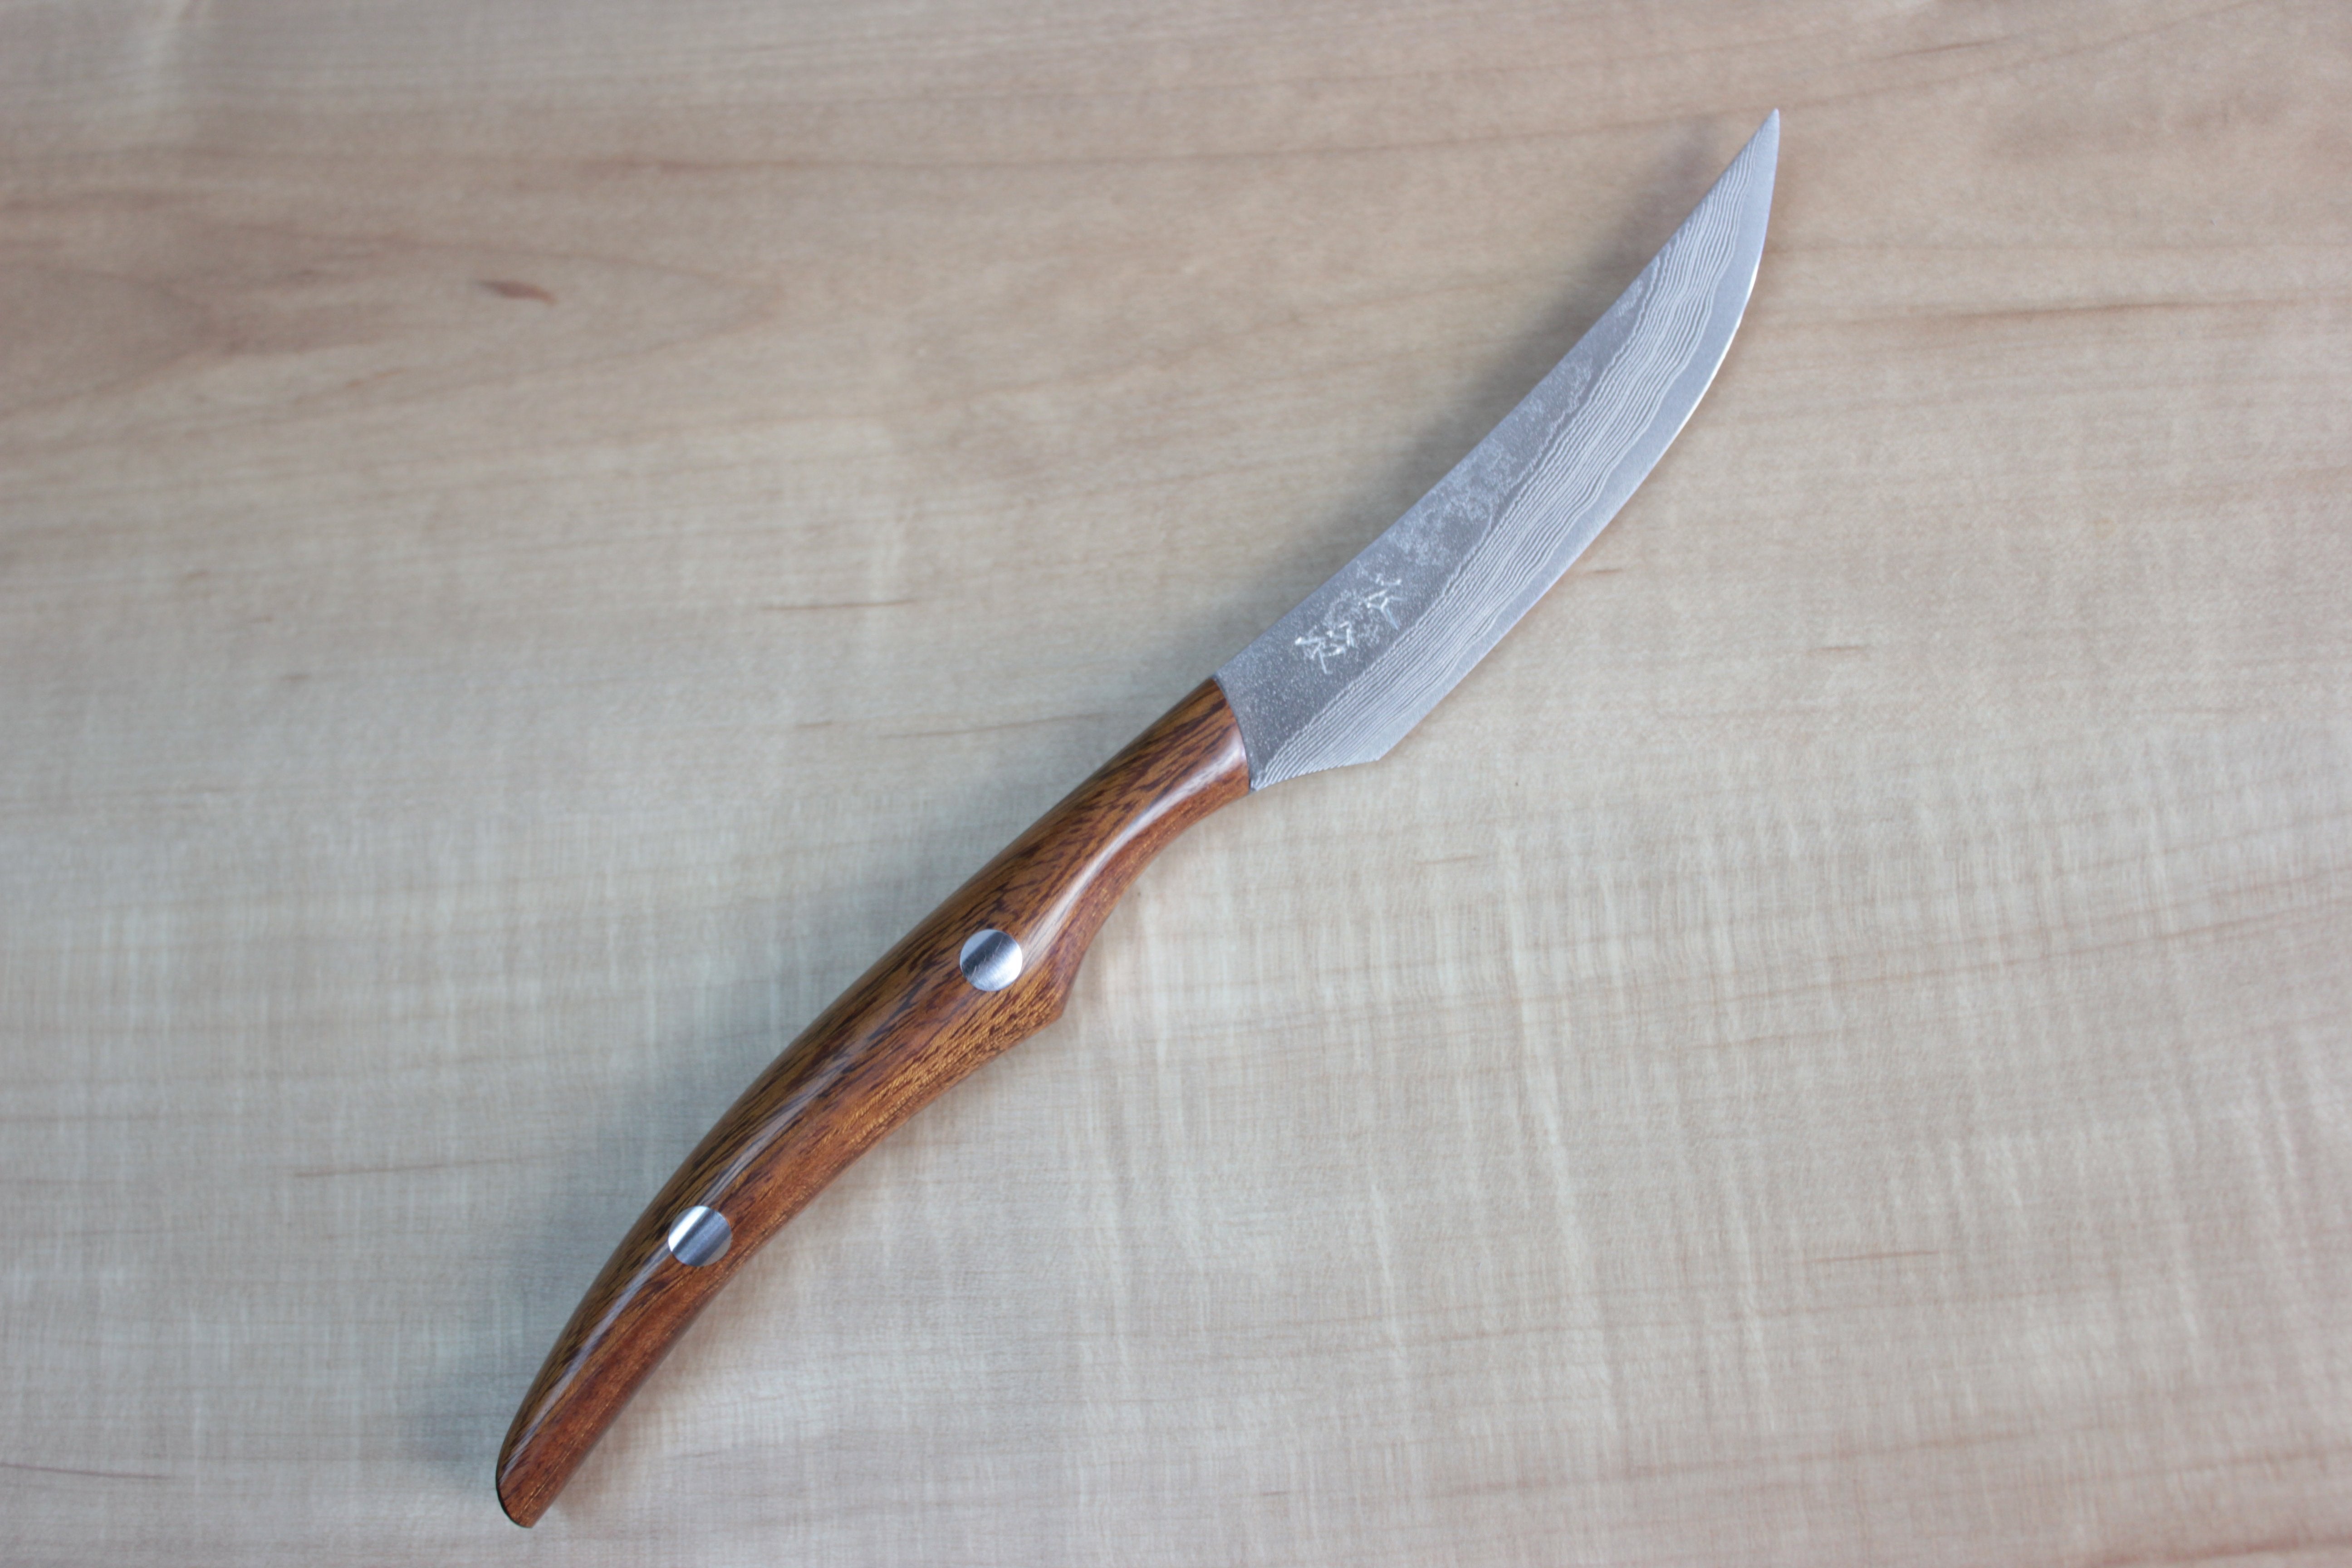 Japanese Damascus Steak Knife Set, Non Serrated, Ebony Wood Handles